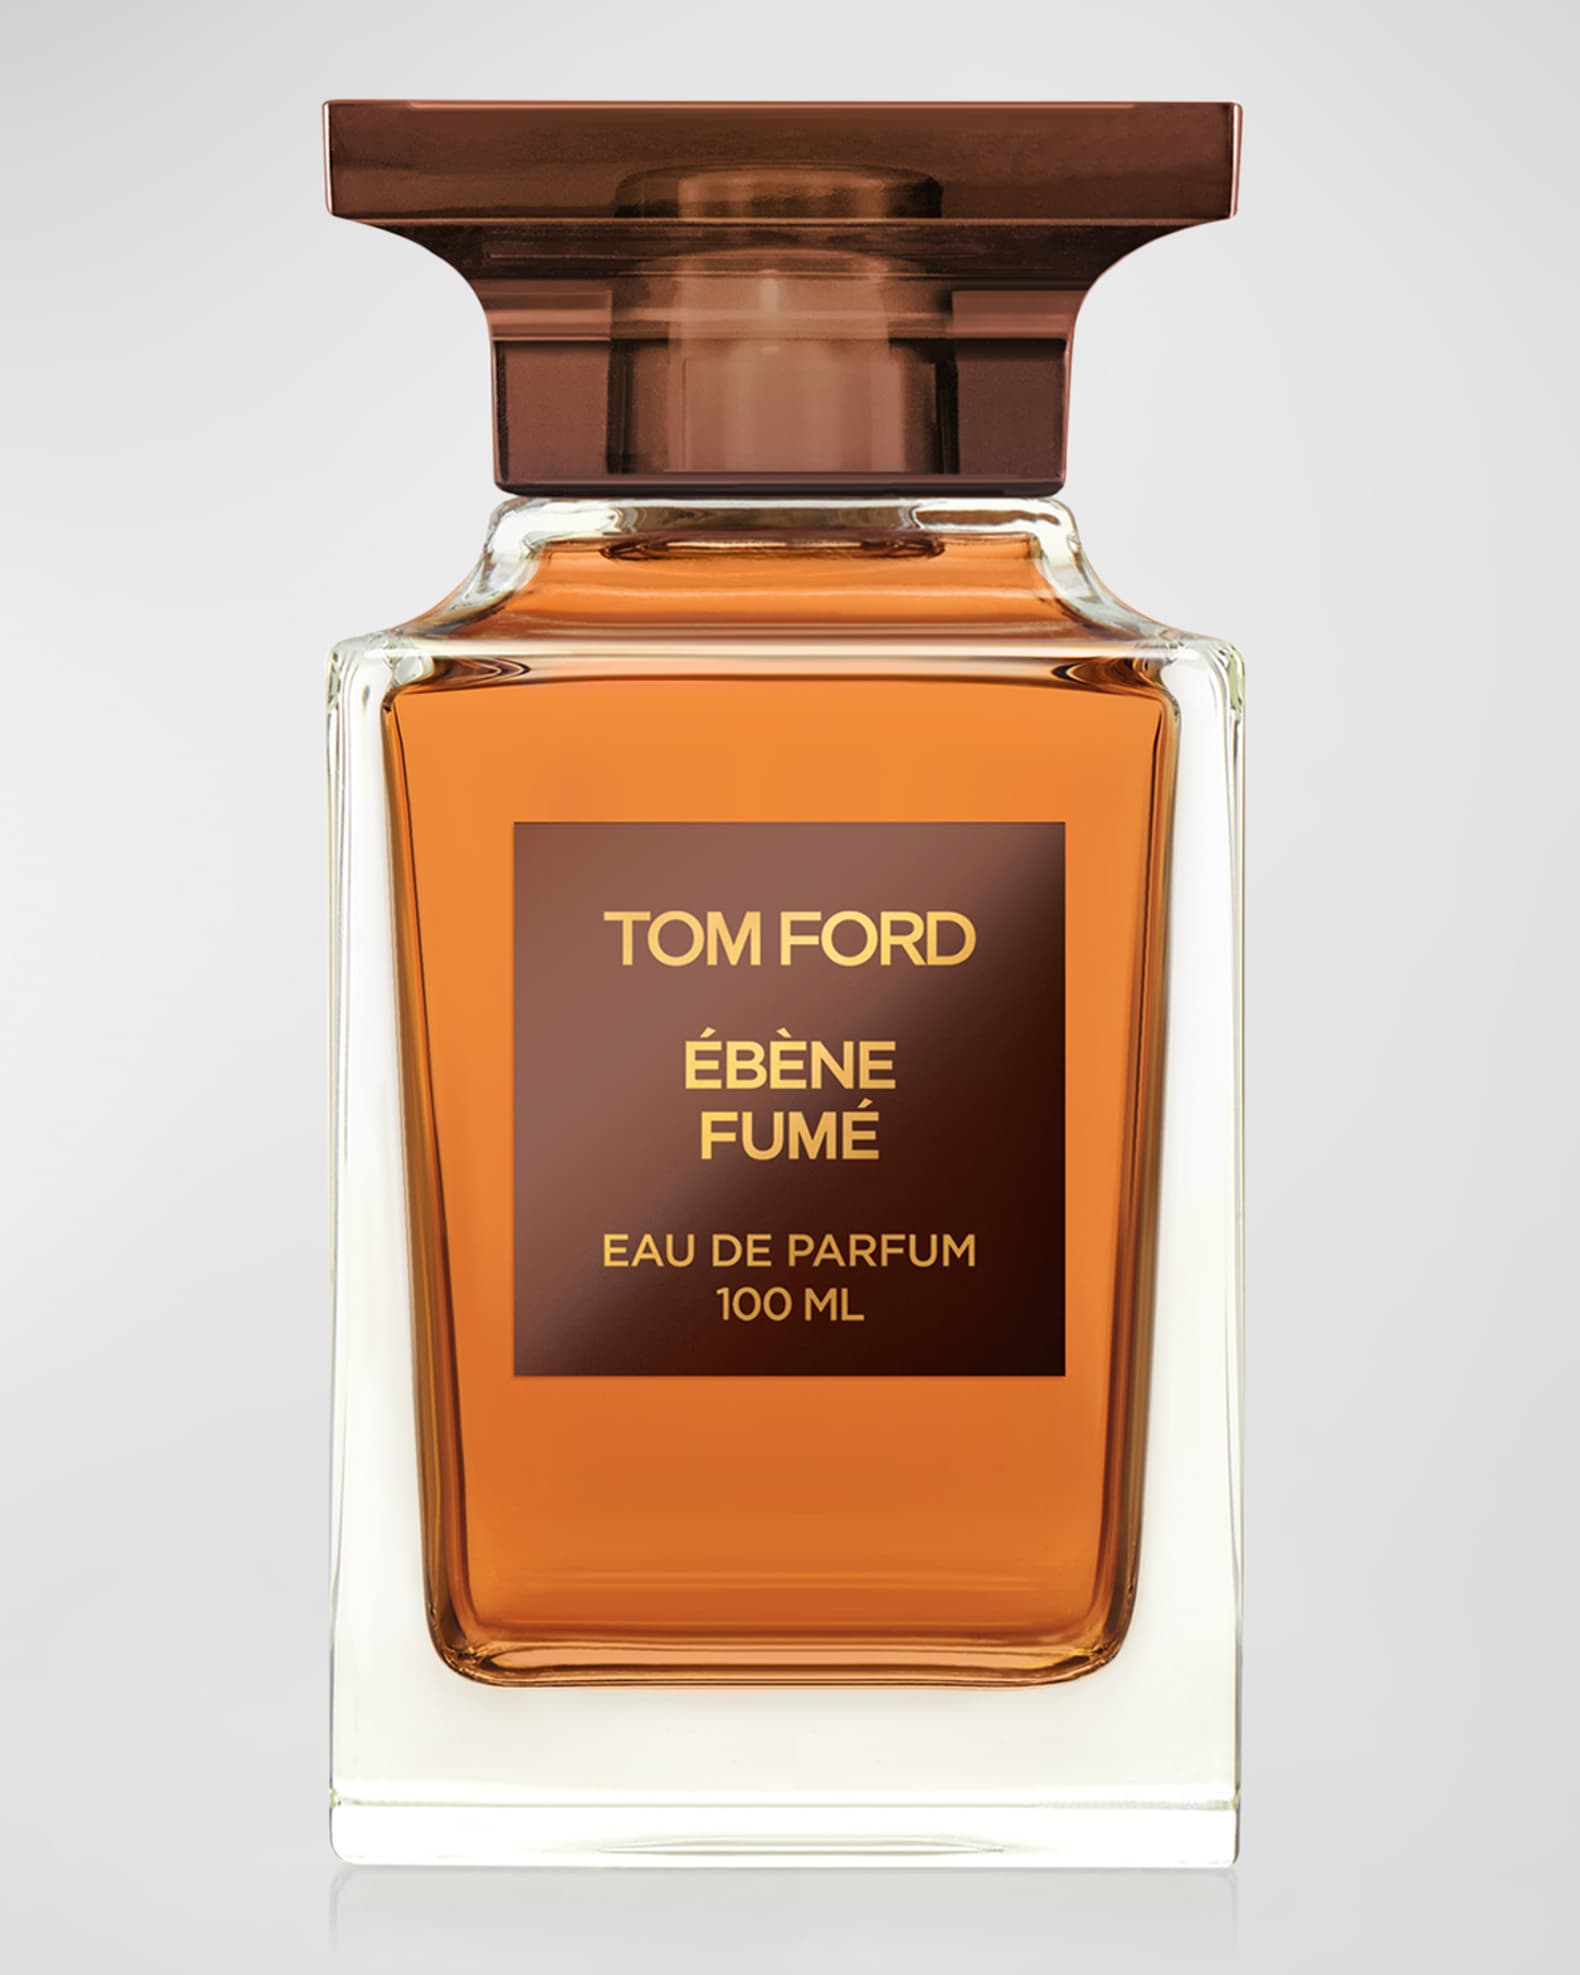 Tom Ford 3.4 oz. Ebene Fume Eau de Parfum